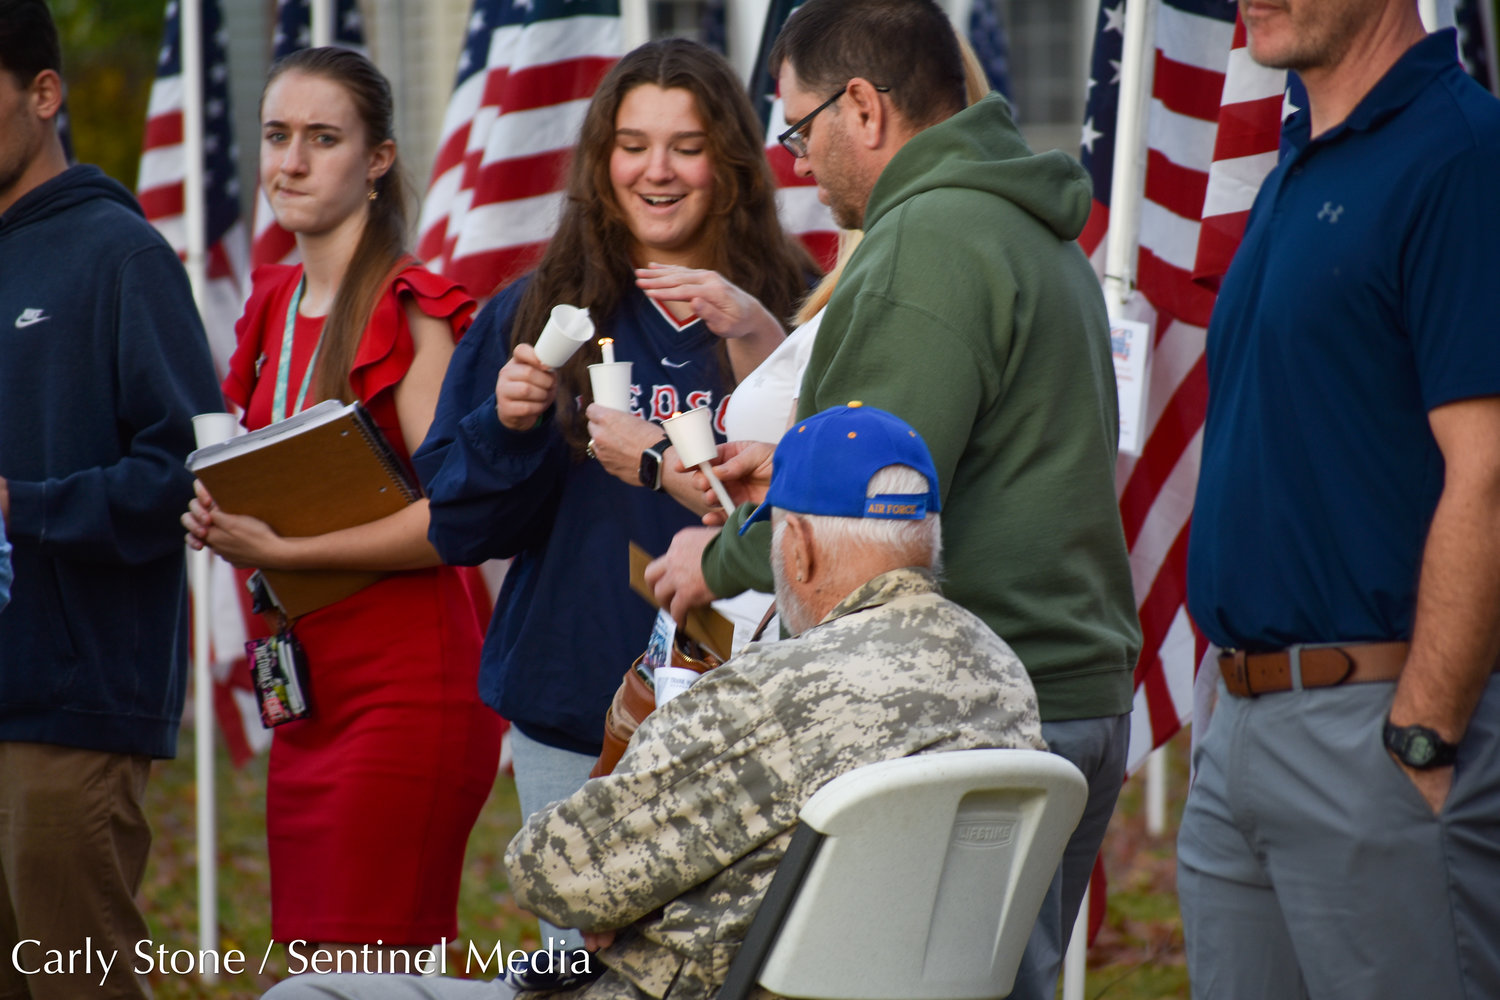 Sau Lễ vinh danh tại Trung tâm Parkway vào thứ Bảy, ngày 5 tháng 11, mọi người tập trung Cánh đồng Chữa bệnh của Cờ ở Khu công viên Tưởng niệm của Utica để làm lễ thắp nến vinh danh các cựu chiến binh của quốc gia.